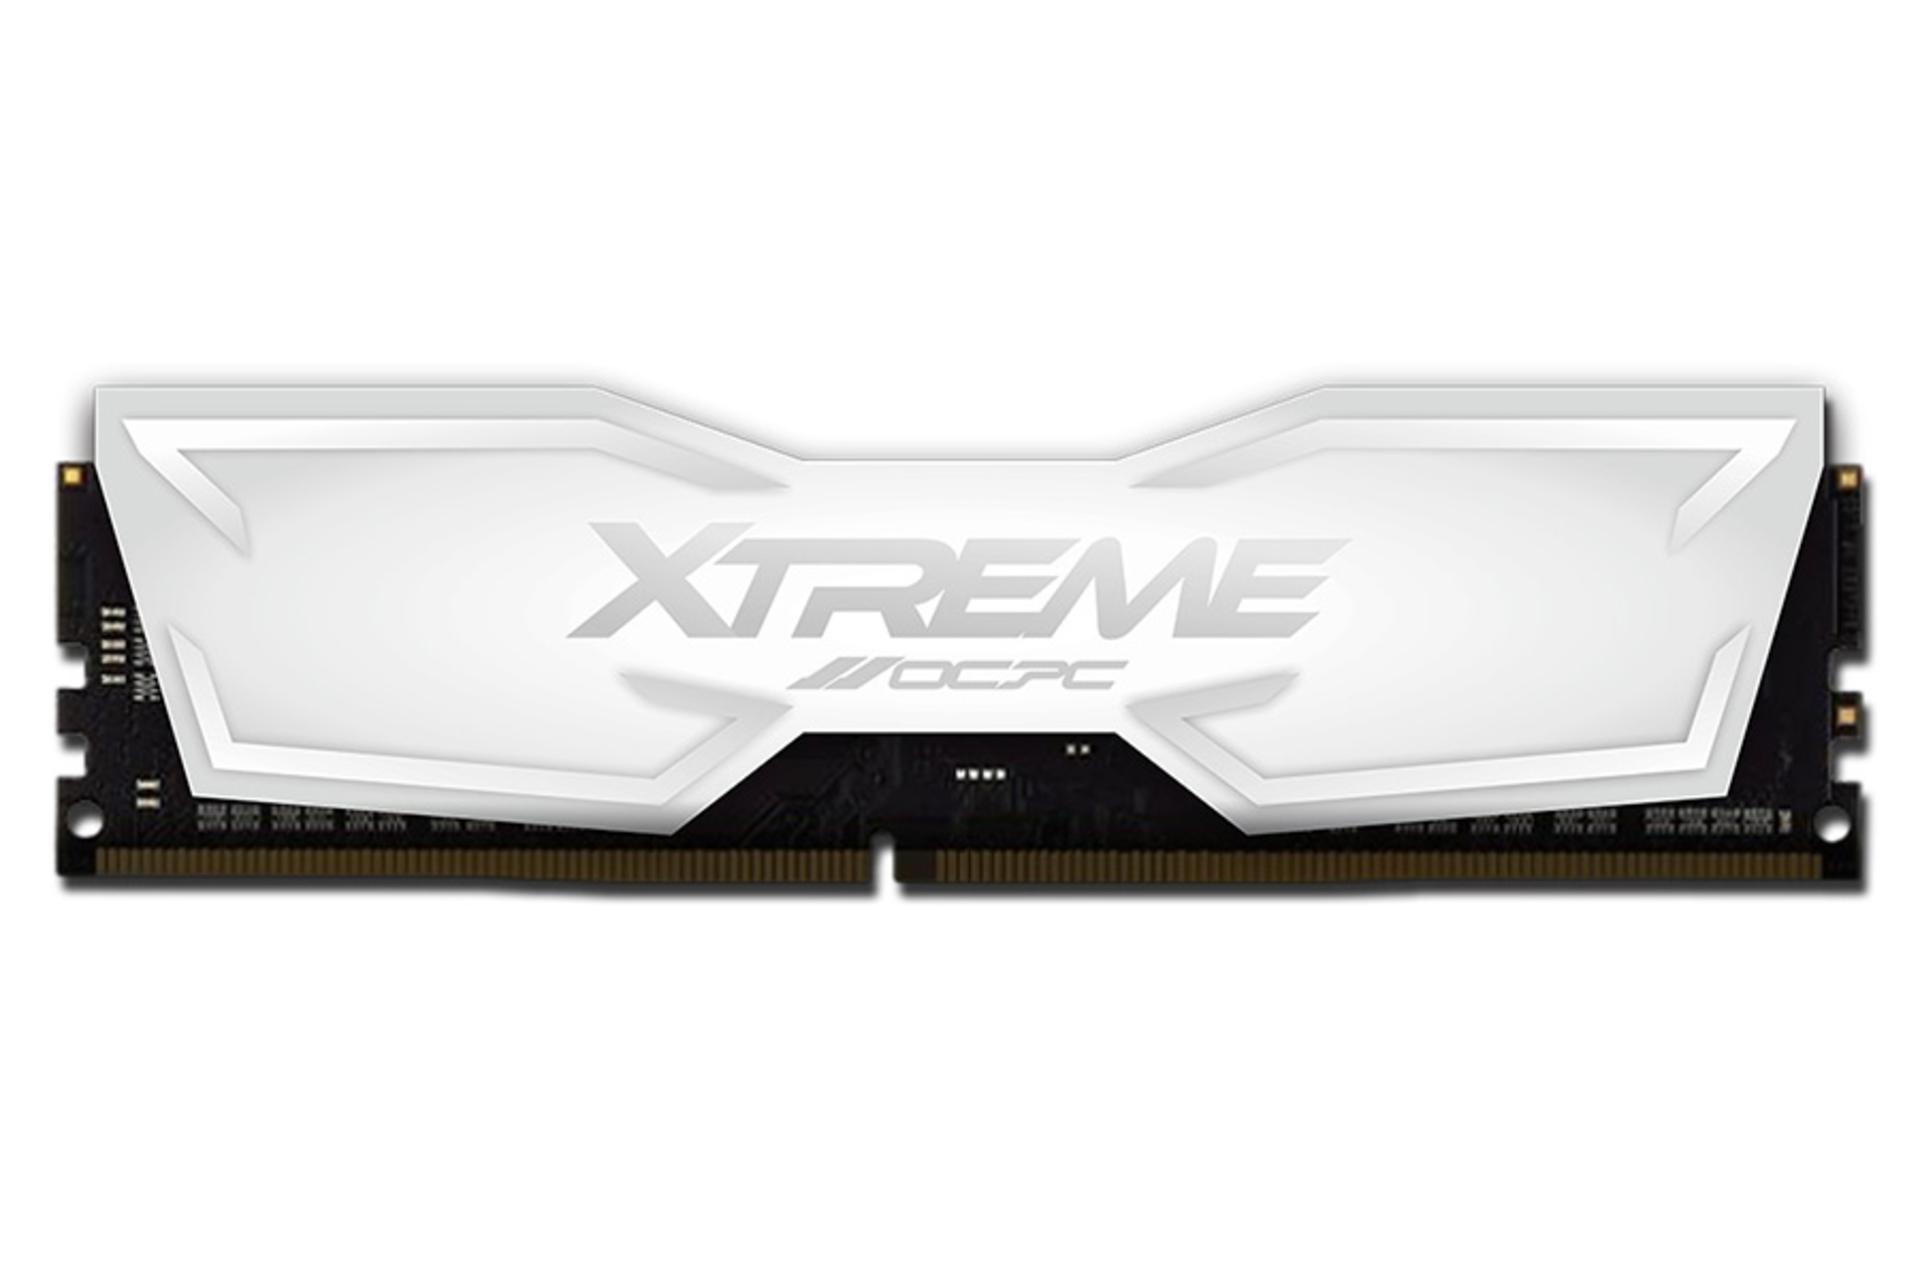 نمای جلوی رم او سی پی سی XT XTREME ظرفیت 8 گیگابایت از نوع DDR4-3200